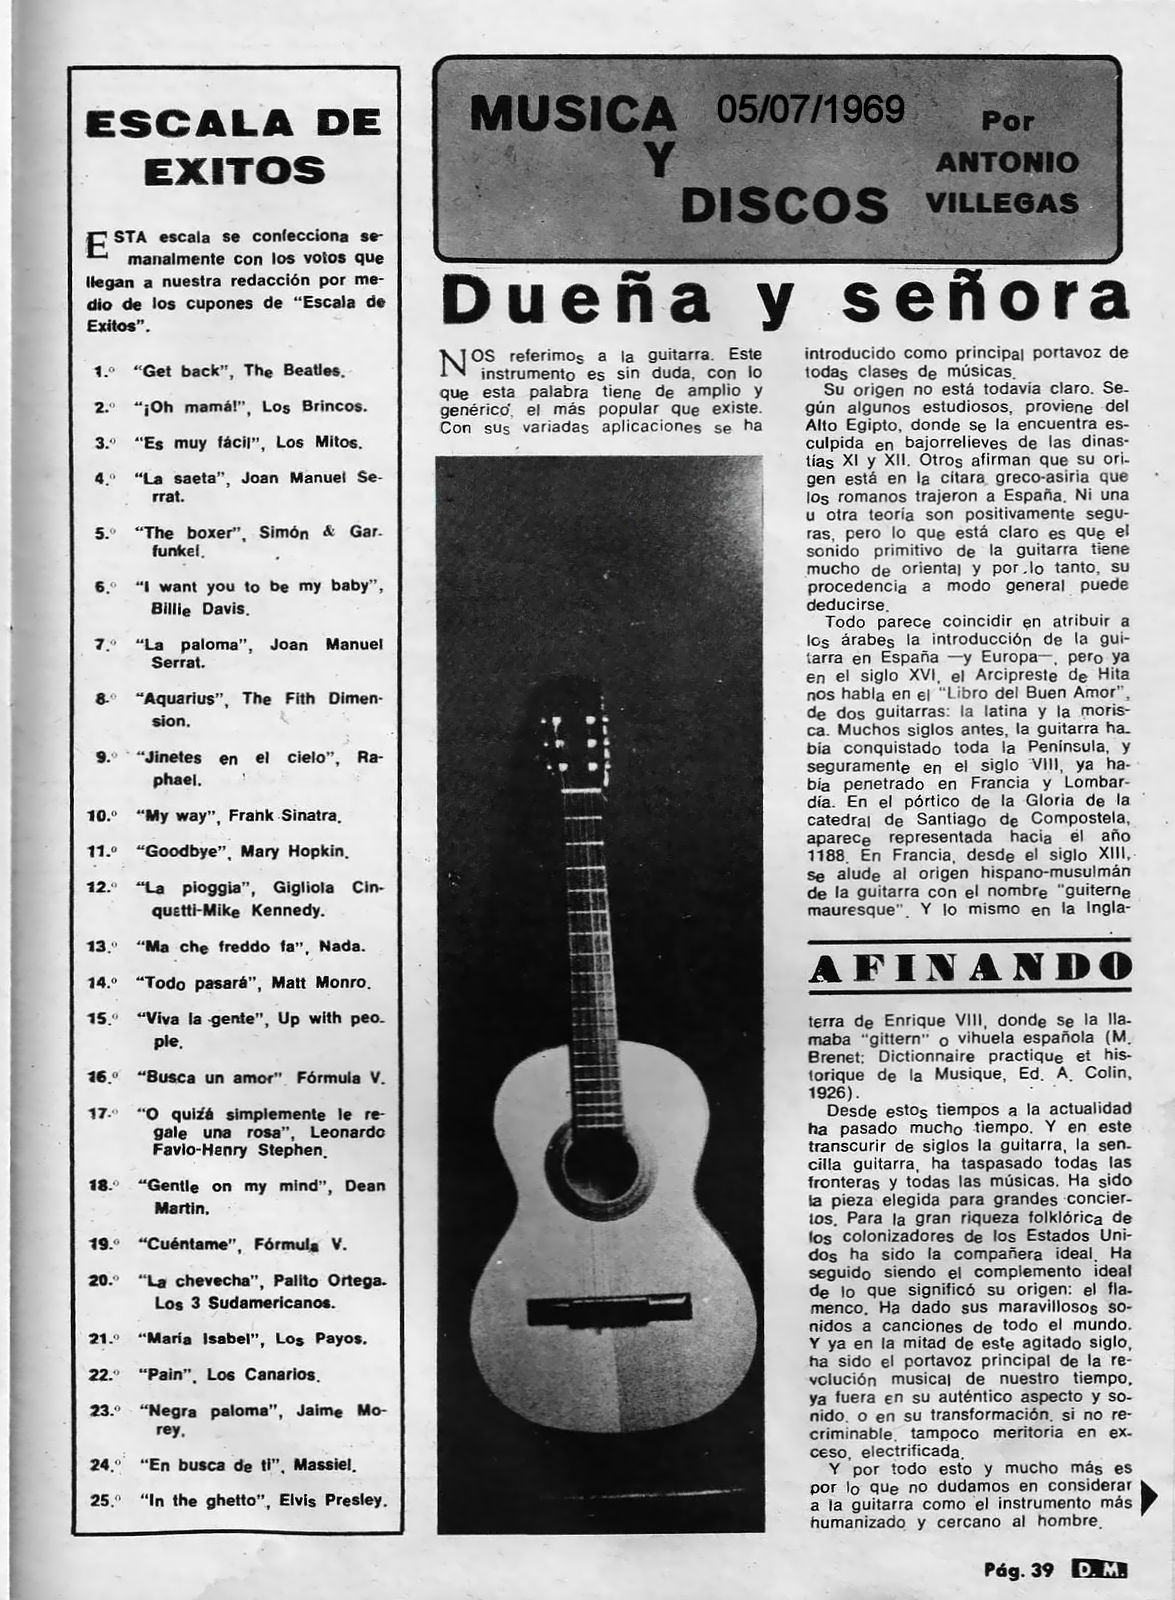 Erase Una Vez... Los Brincos [1962]